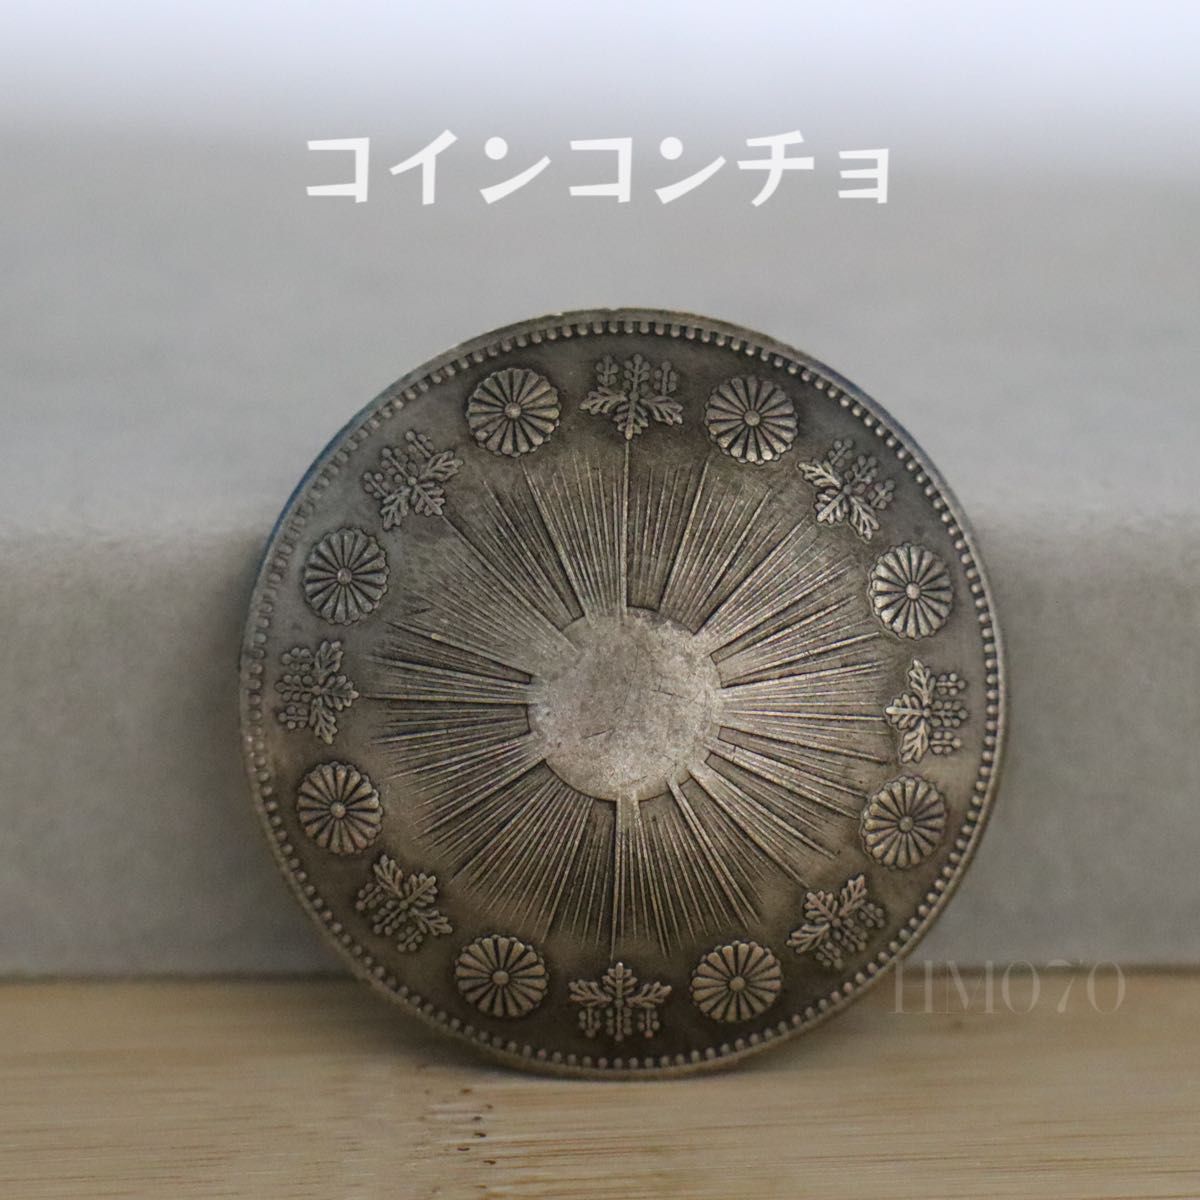 ネジ式 コンチョ コイン 菊紋章模様 アンティーク調 ボタンレザークラフト